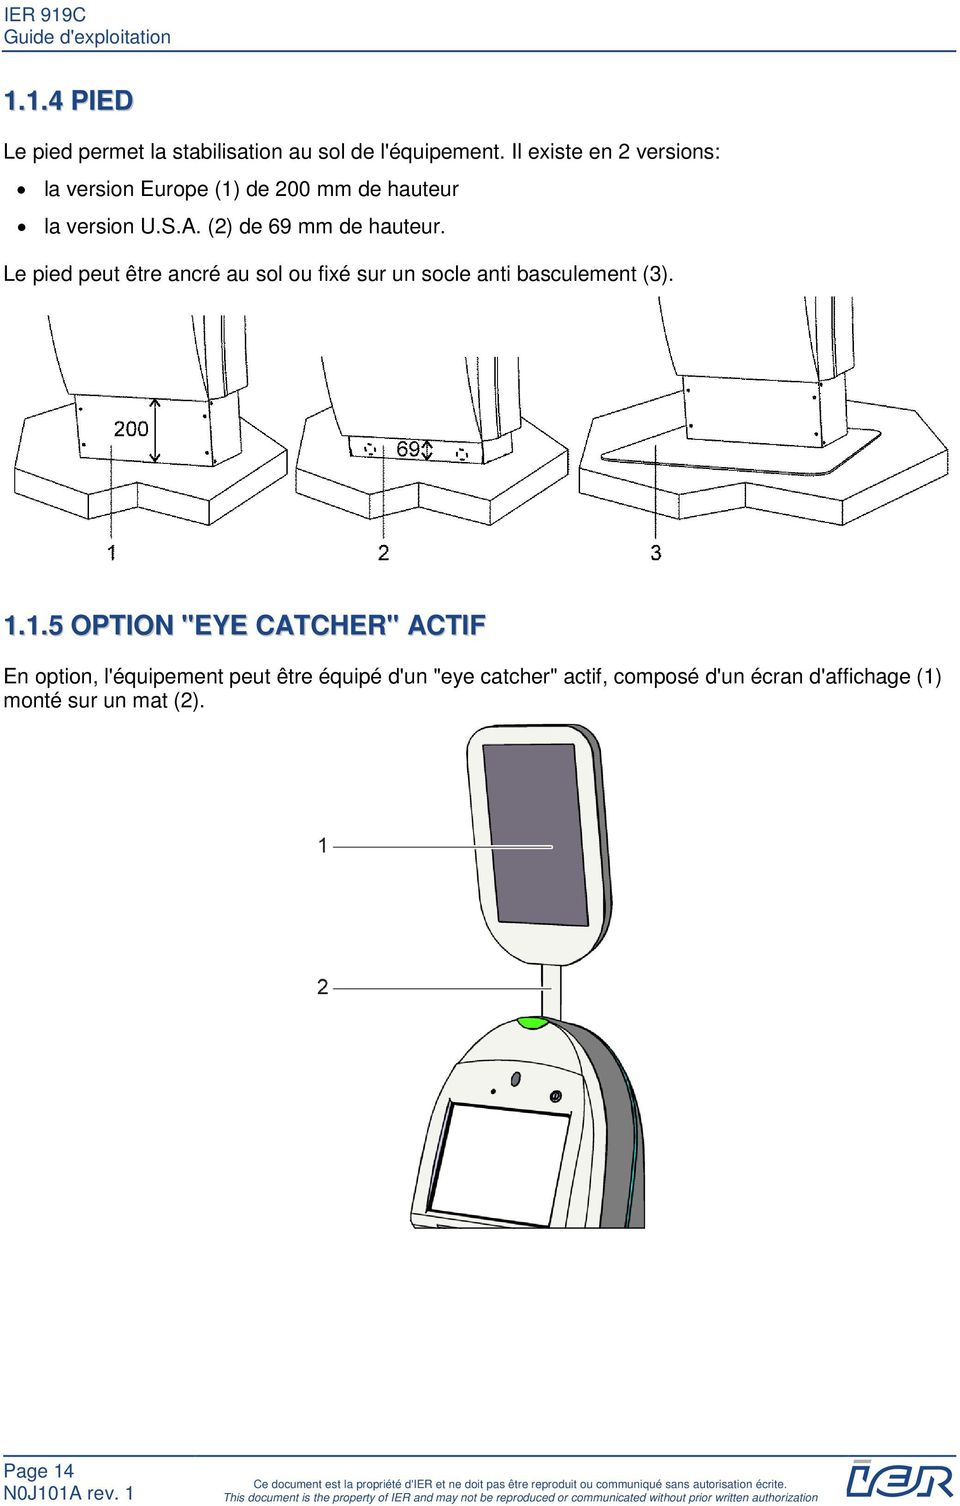 1.5 OPTION "EYE CATCHER" ACTIF En option, l'équipement peut être équipé d'un "eye catcher" actif, composé d'un écran d'affichage (1) monté sur un mat (2).